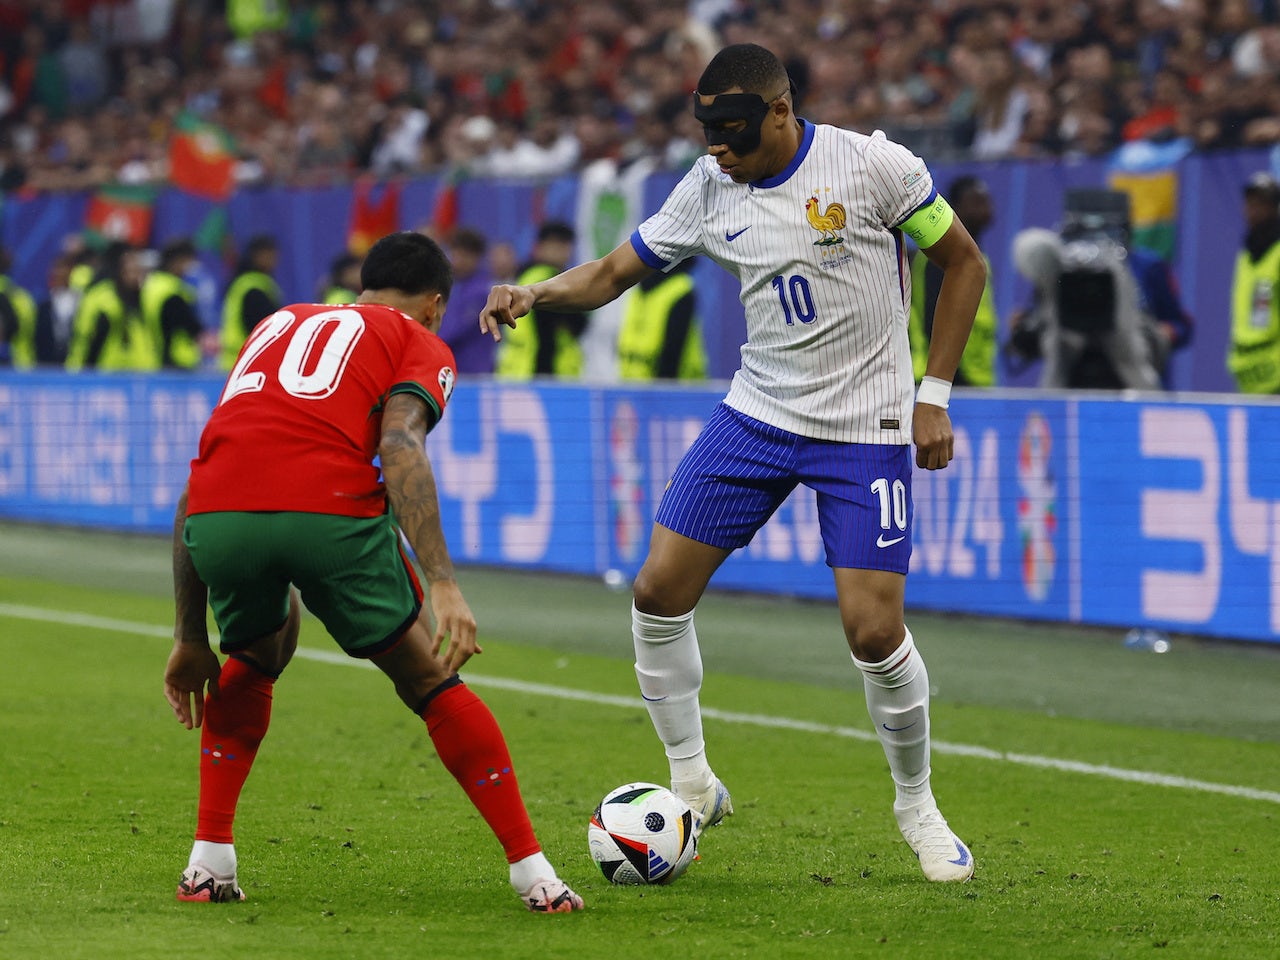 Portugal 0-0 France live commentary: Martinez's side make stronger start